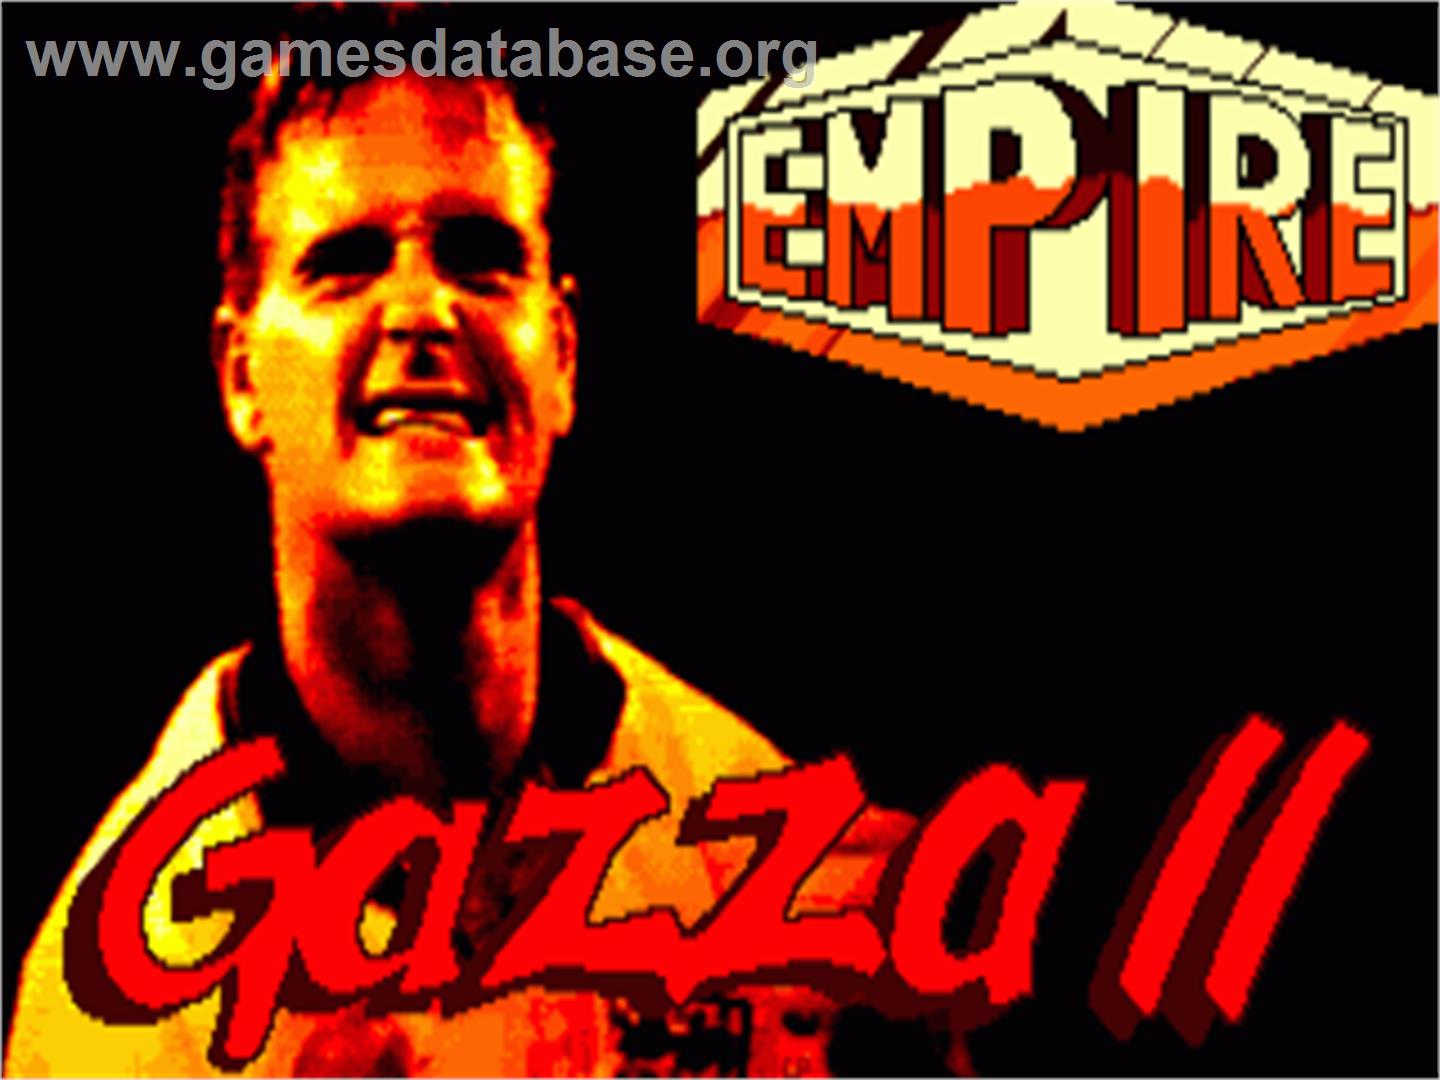 Gazza 2 - Commodore Amiga - Artwork - Title Screen